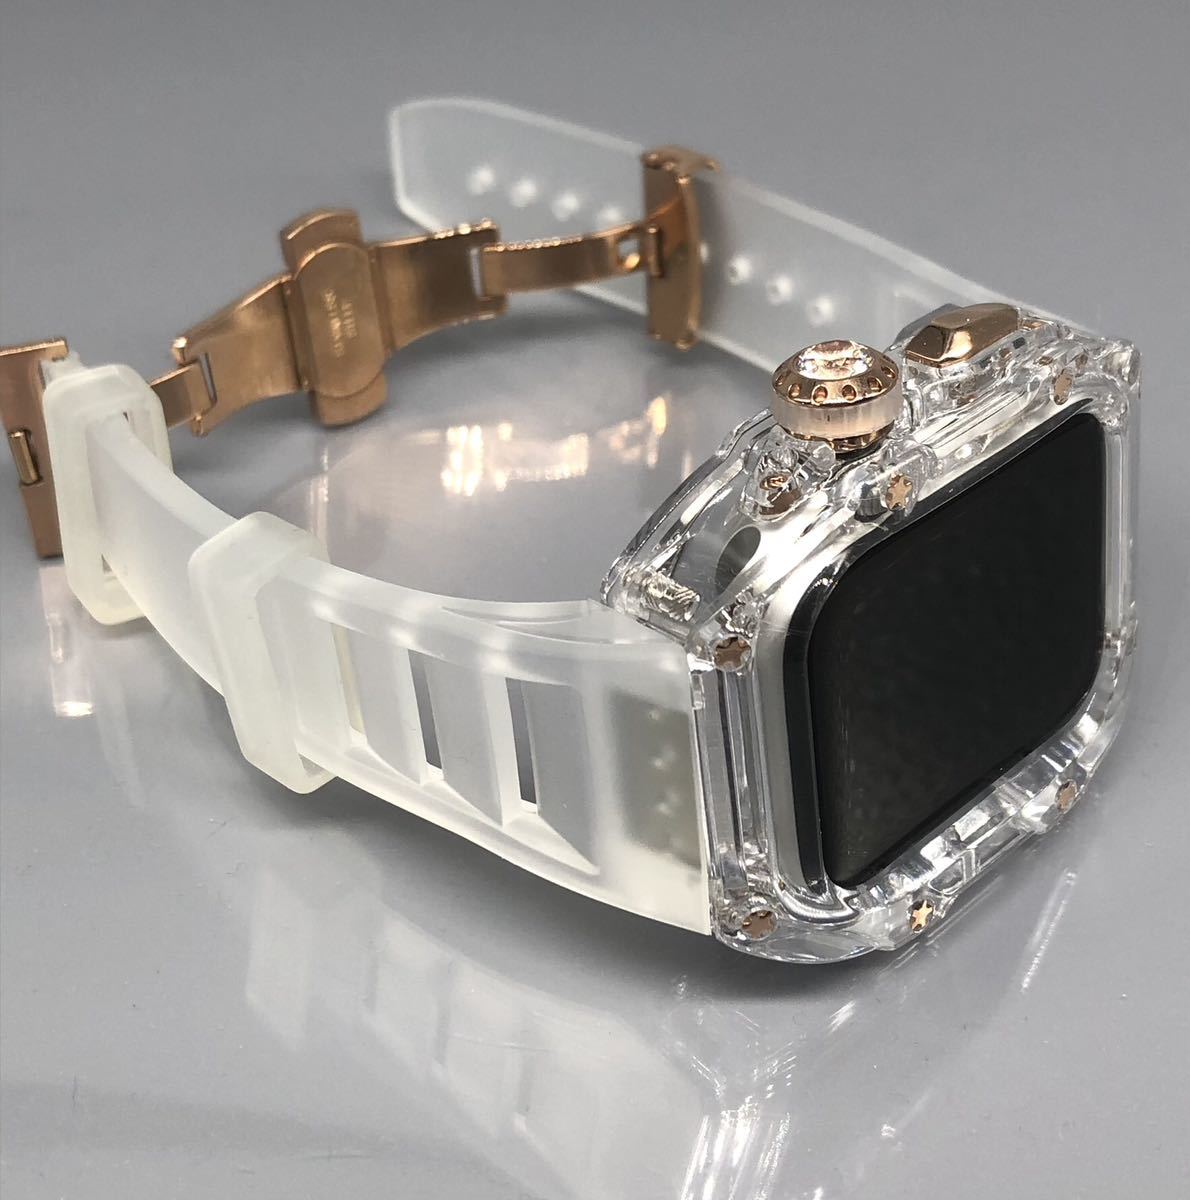 zc  роза  золотой   чистый   чистый ★ Apple   часы   лента   резина  ремень   крышка 　Apple Watch  чистый   кейс  44mm 45mm